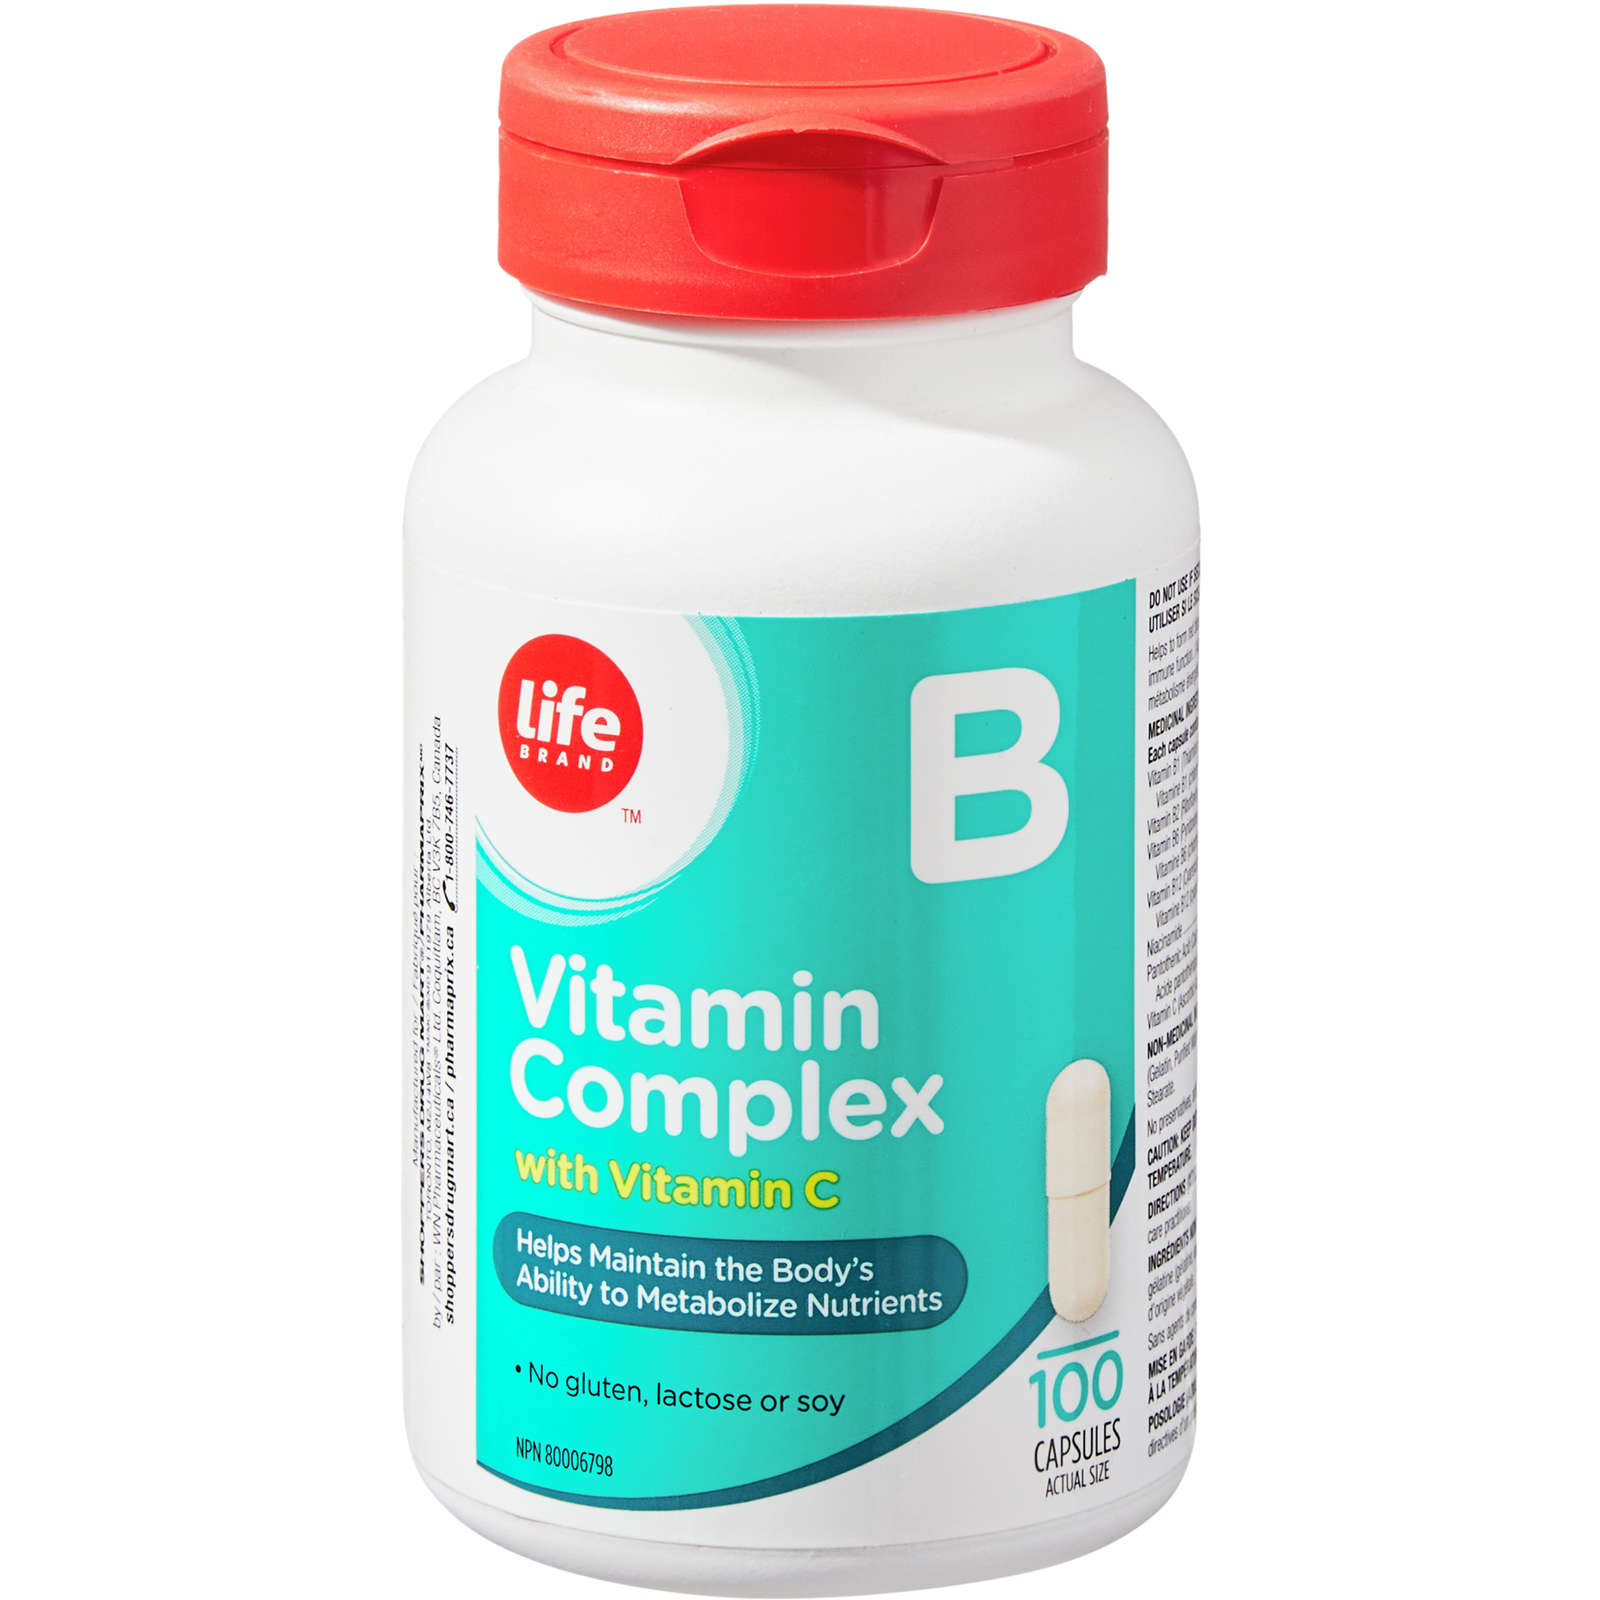 Vitamin B Complex with Vitamin C